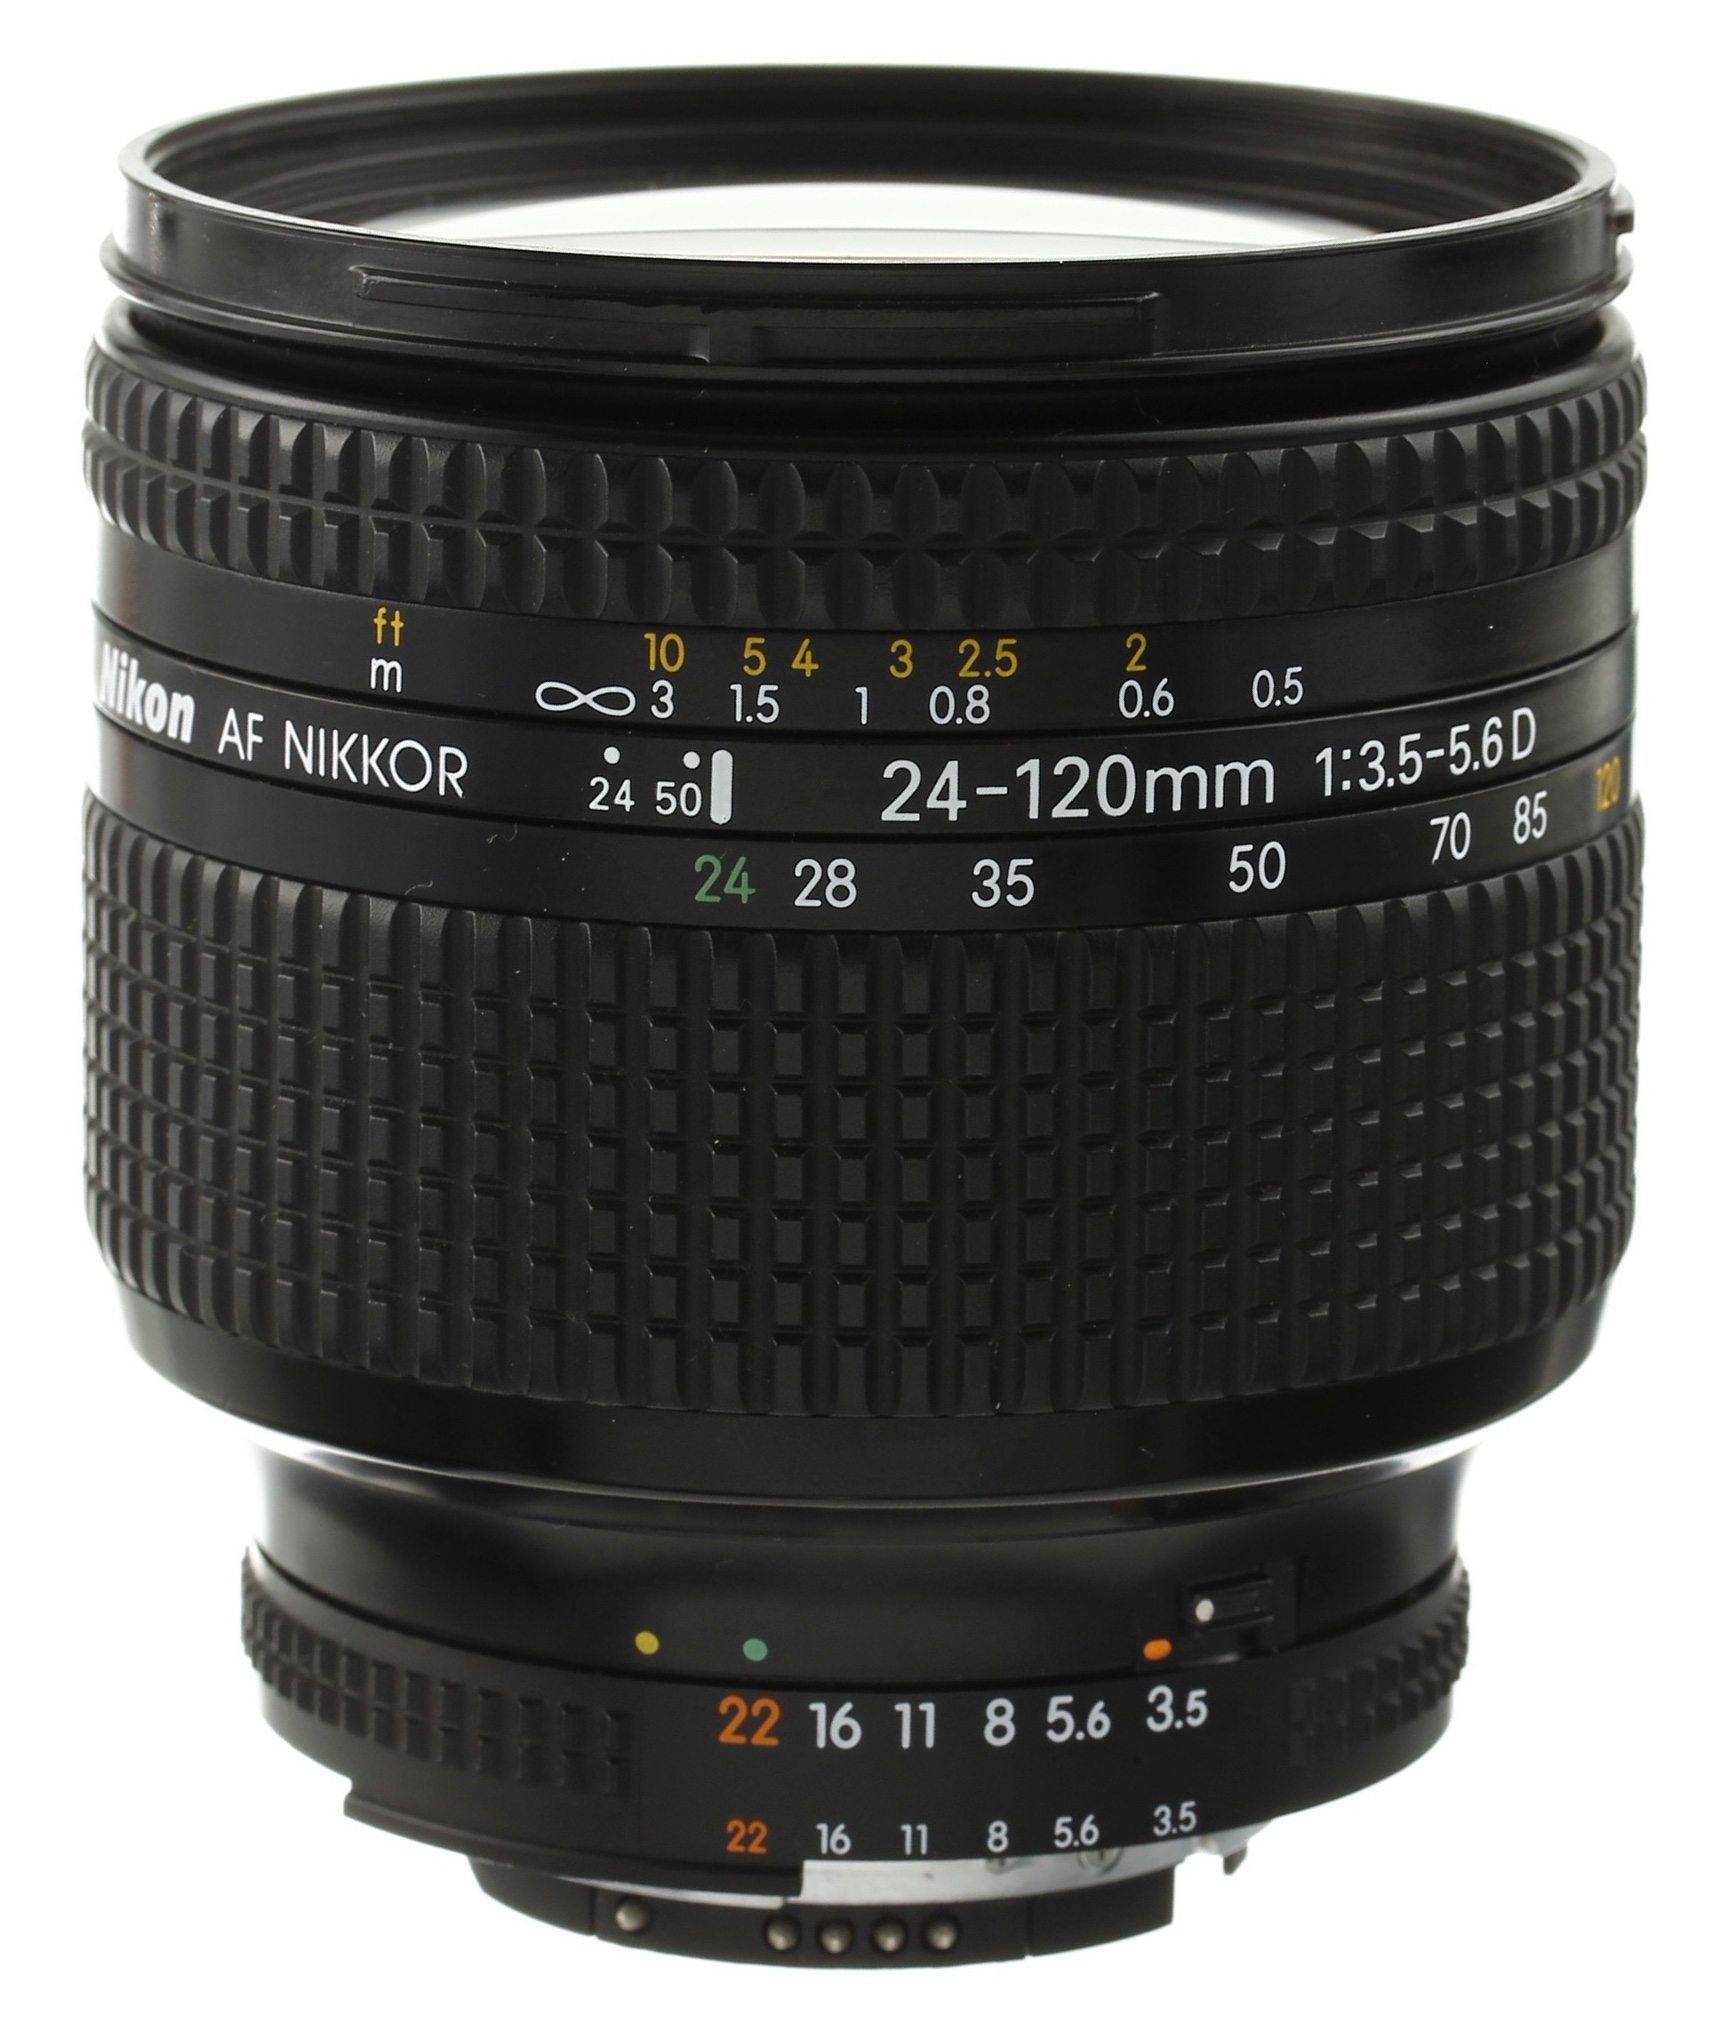 Nikon AF Zoom-Nikkor 24-120mm f/3.5-5.6D IF Camera Lens Manual 